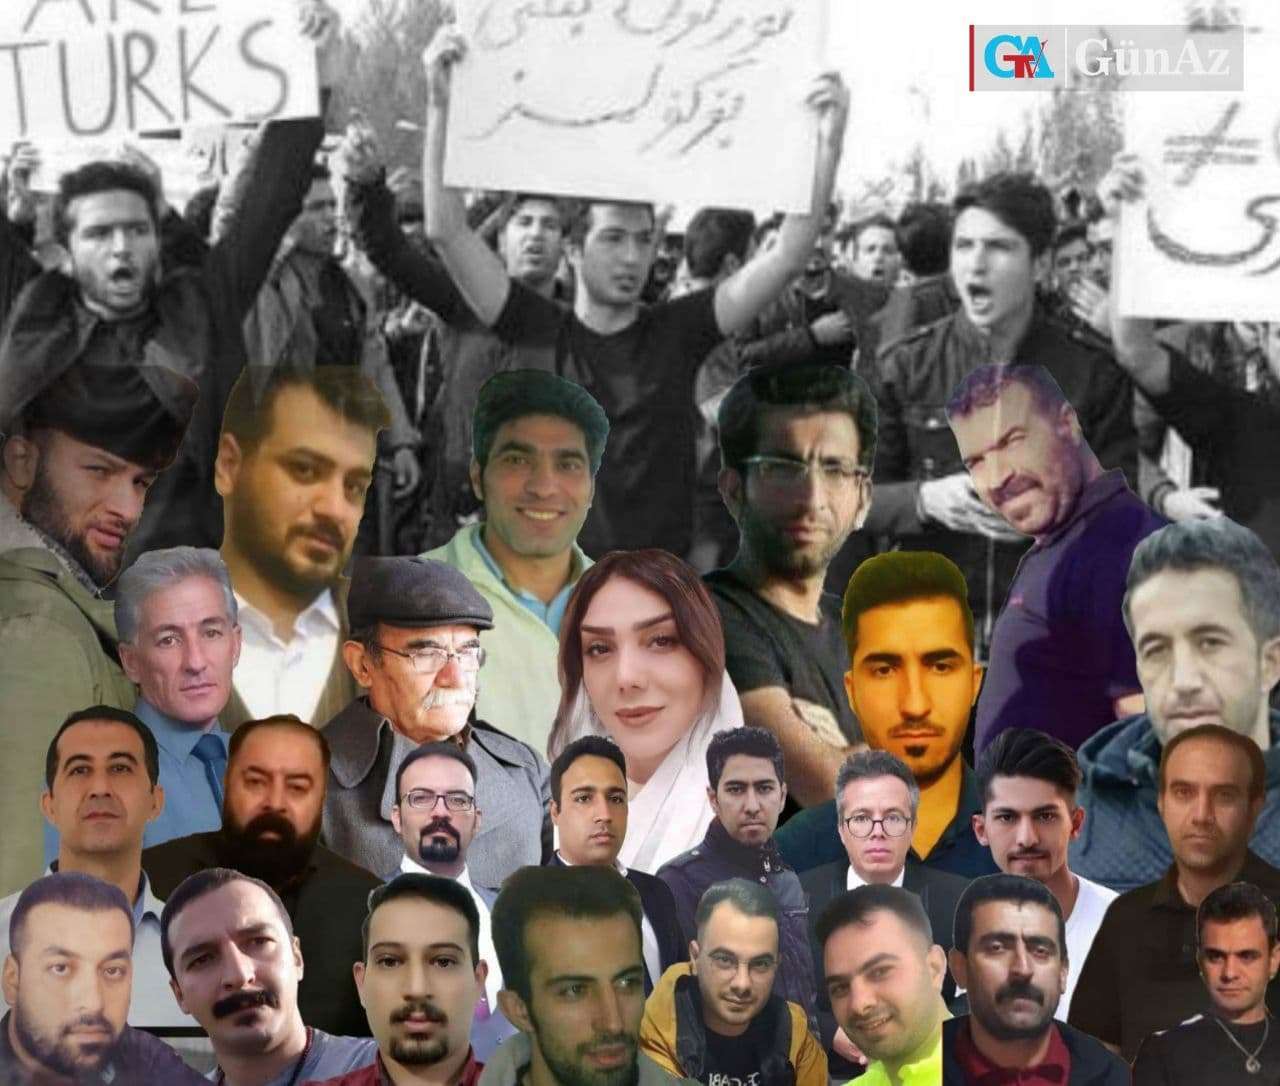 حبس ، شلاق و جریمه نقدی؛ گزارش تکمیلی از احکام صادره علیه فعالین بازداشتی وقایع ۲ مرداد آذربایجان